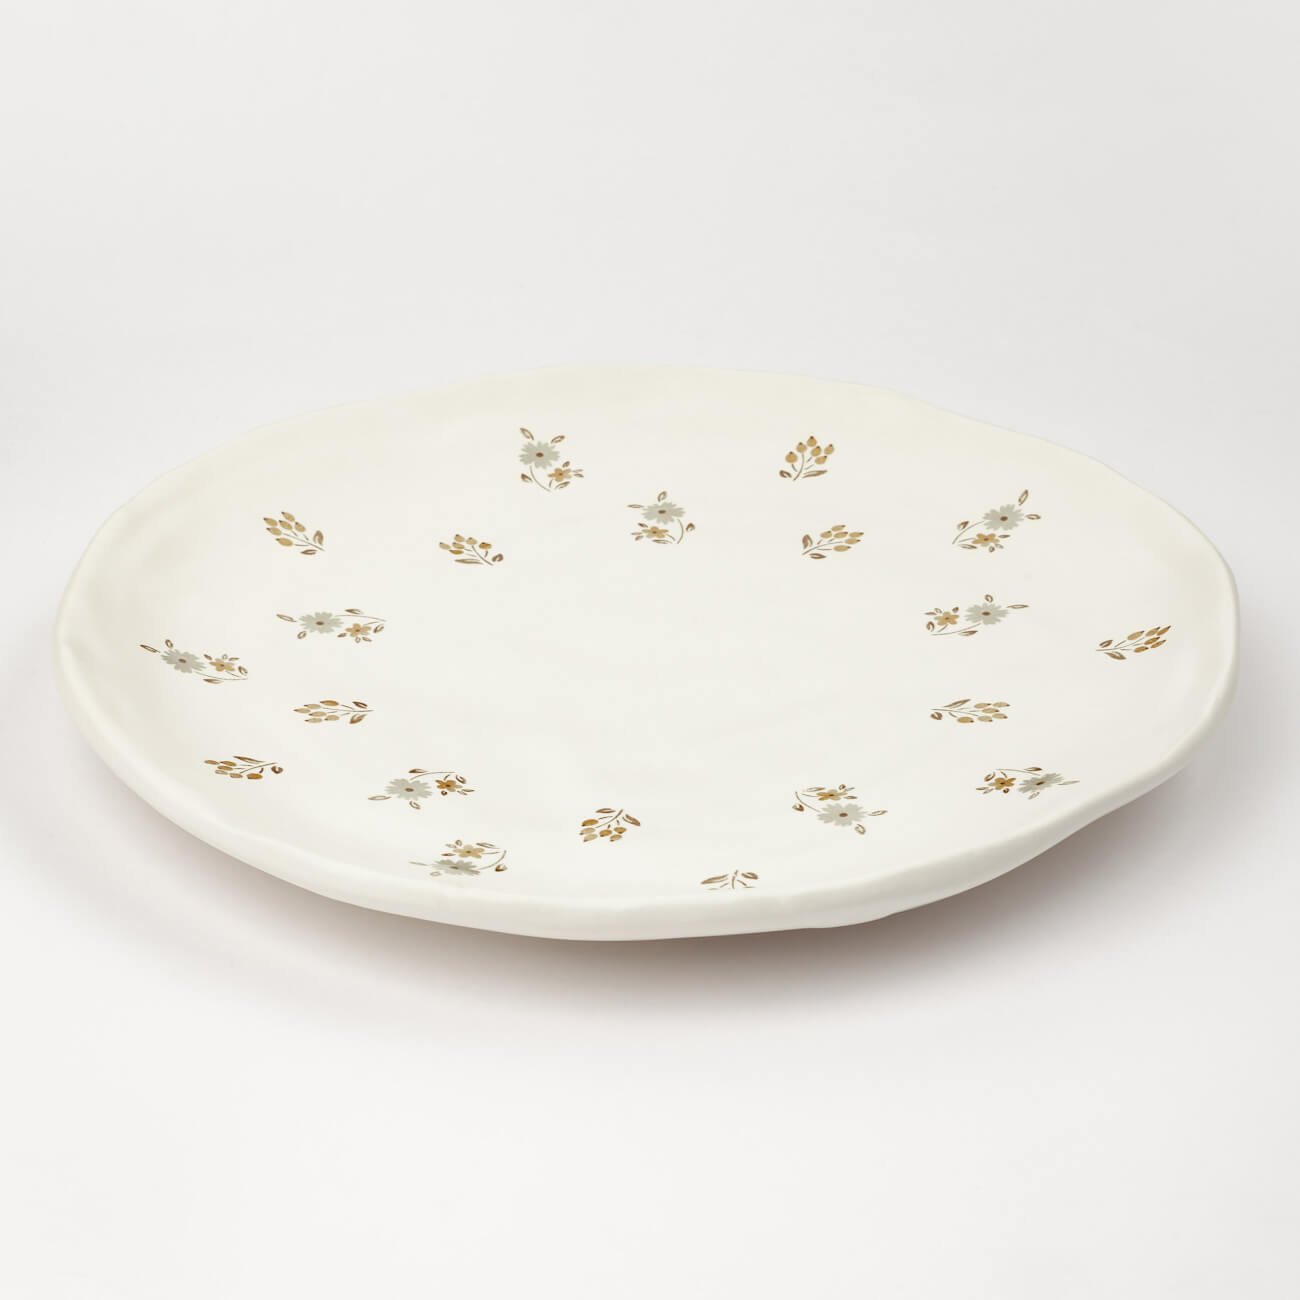 Блюдо, 23 см, керамика, молочное, Винтажные цветы, La flore ferplast thea medium bowl миска для собак керамика